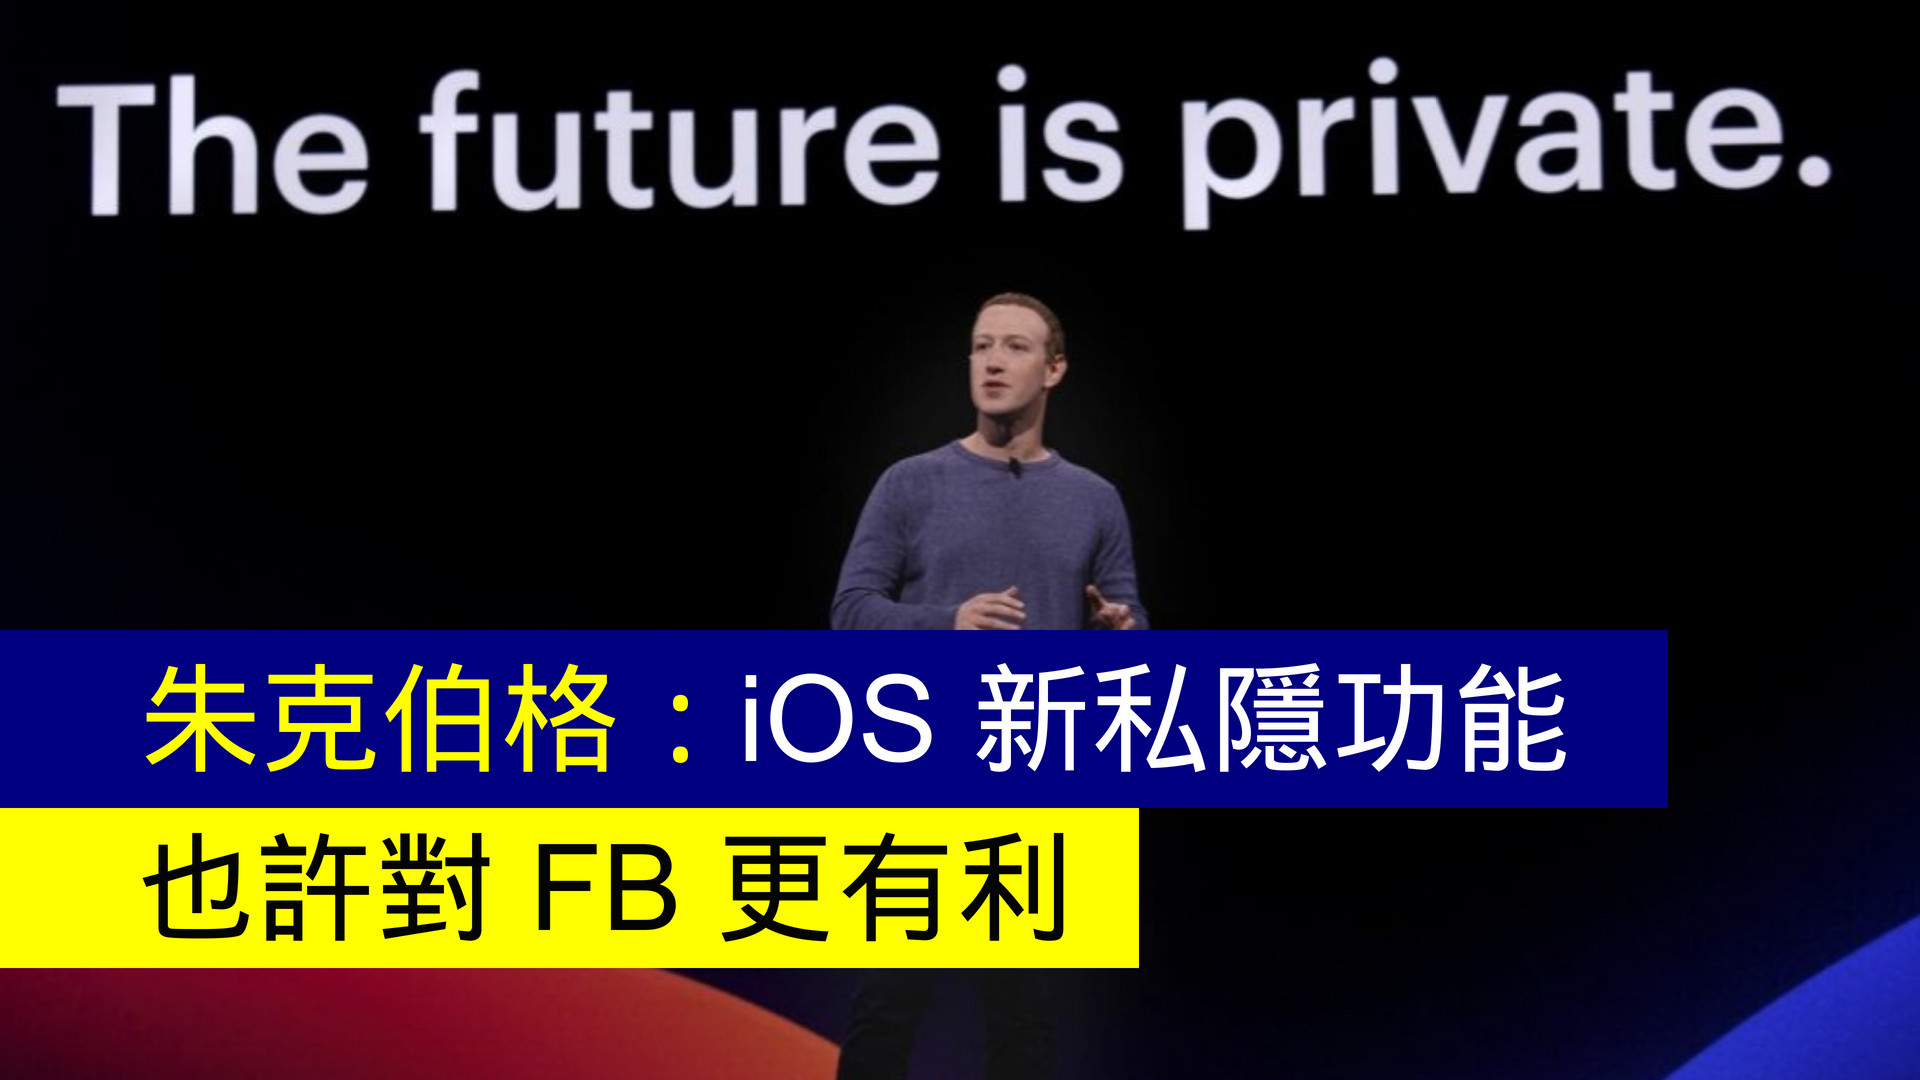 [討論] Facebook 祖克柏豁然開朗 覺得新隱私有利